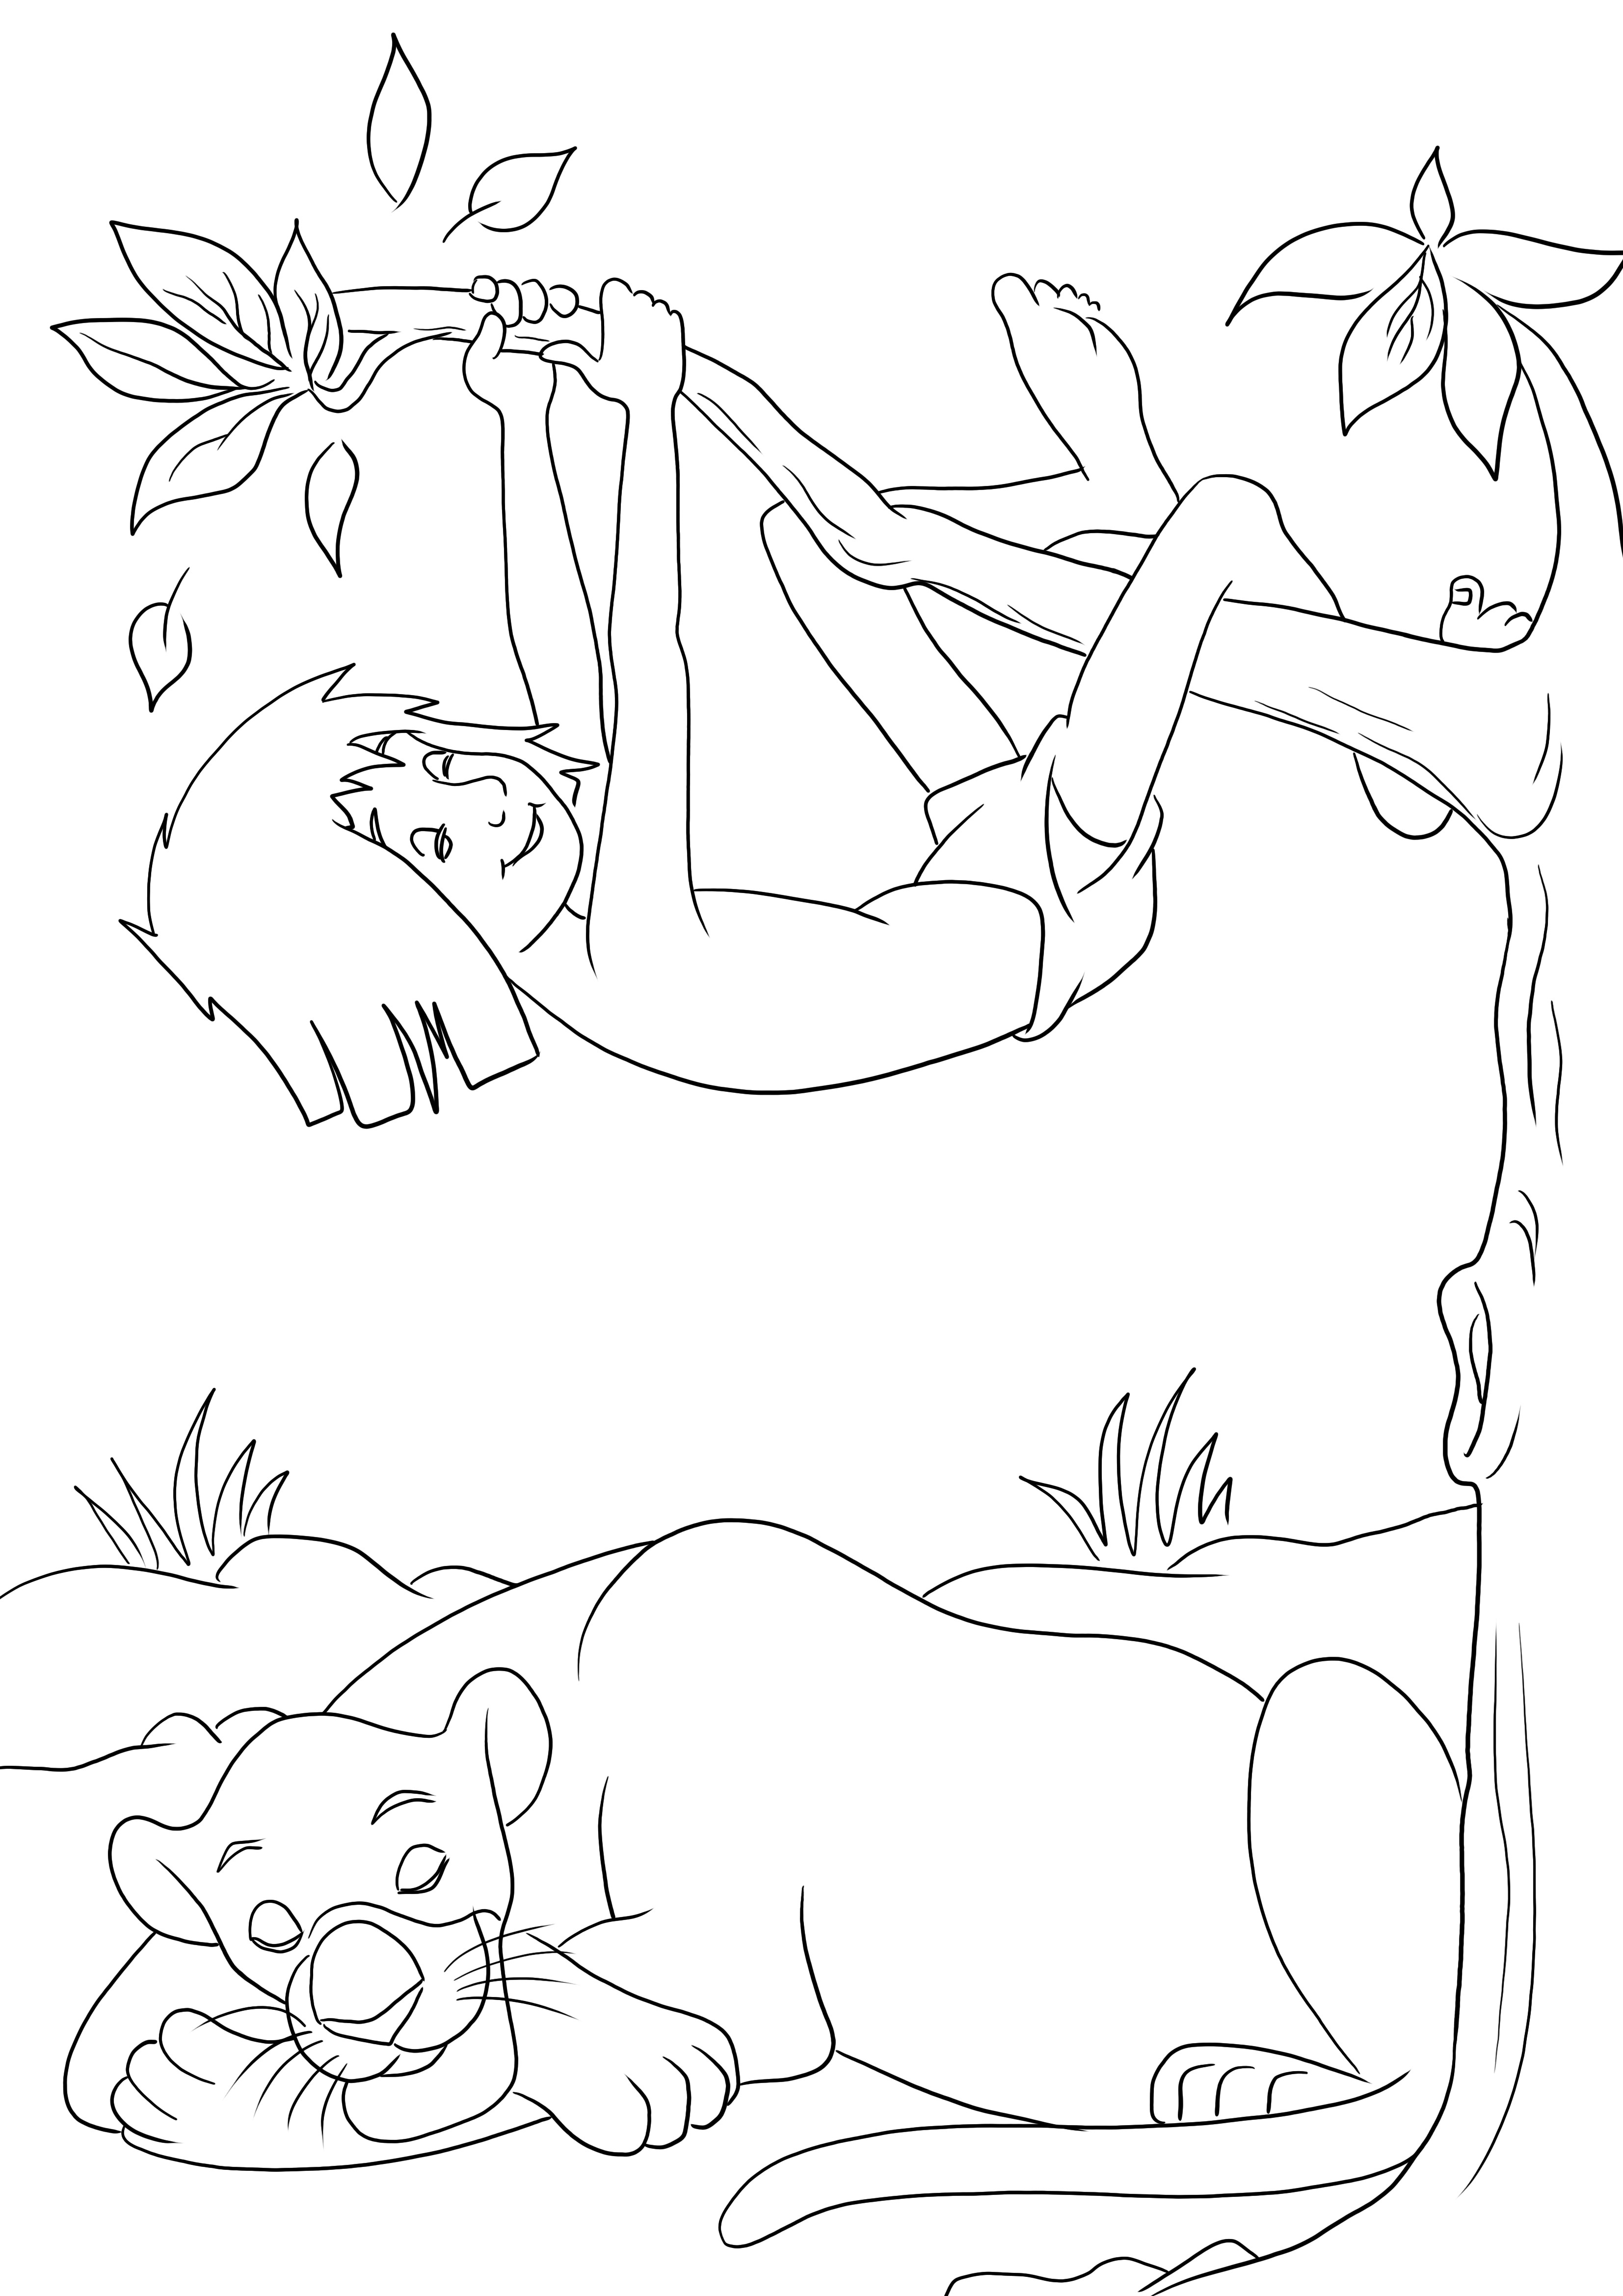 Mowgli și Bagheera dormind imprimabil gratuit pentru colorat ușor